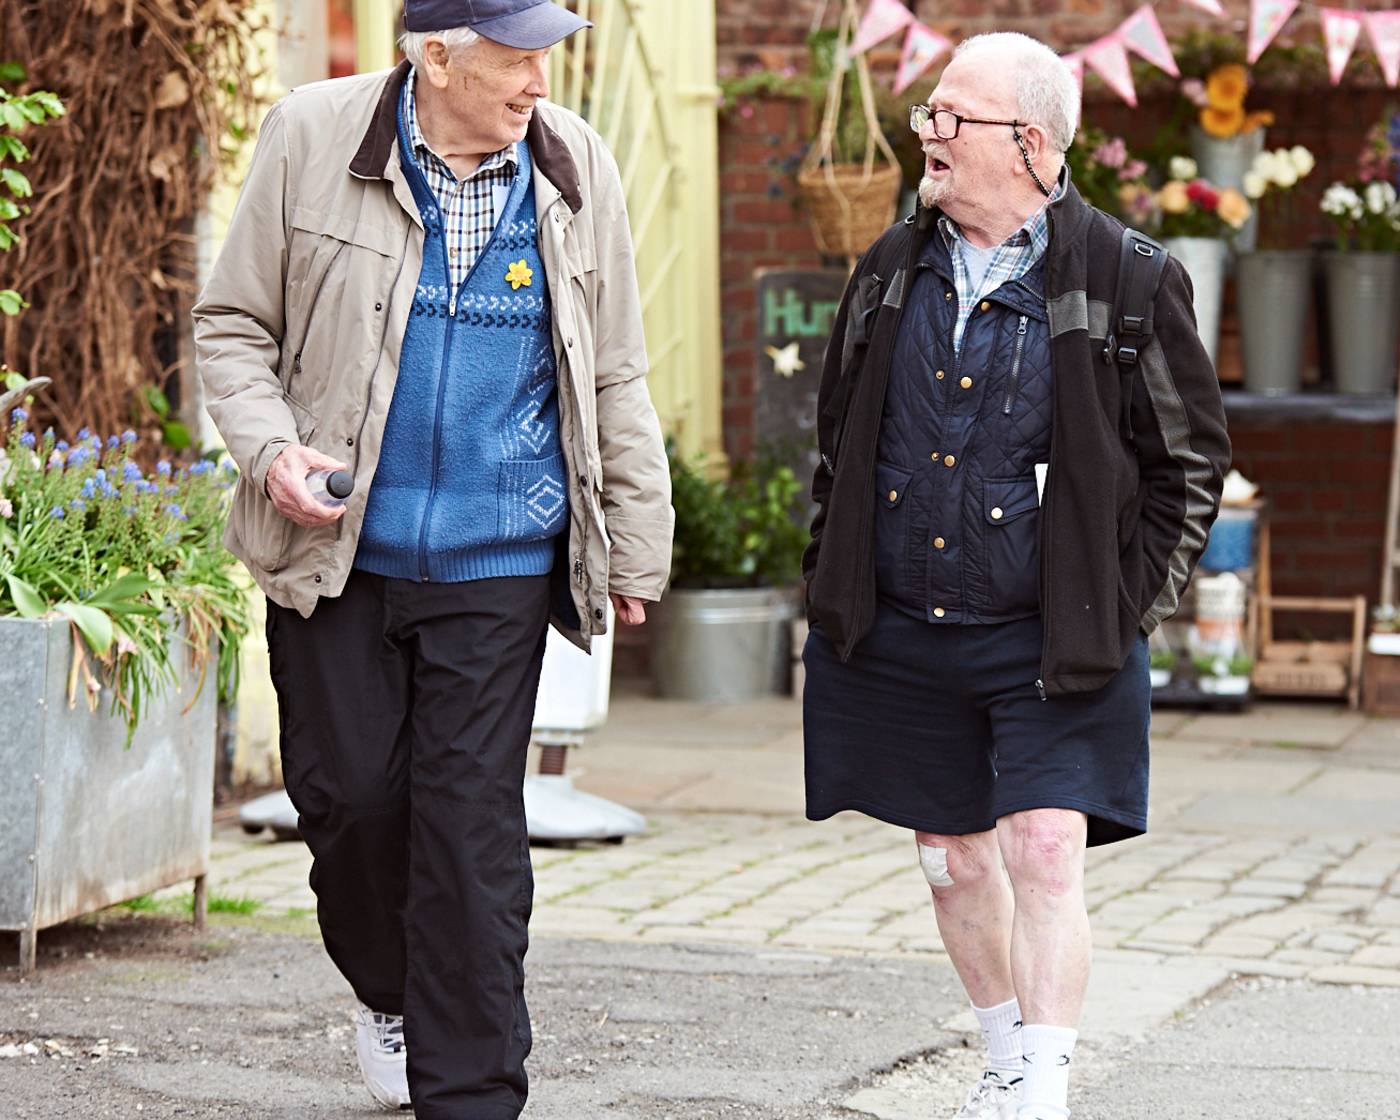 Two older men walking along a pedestrianised street